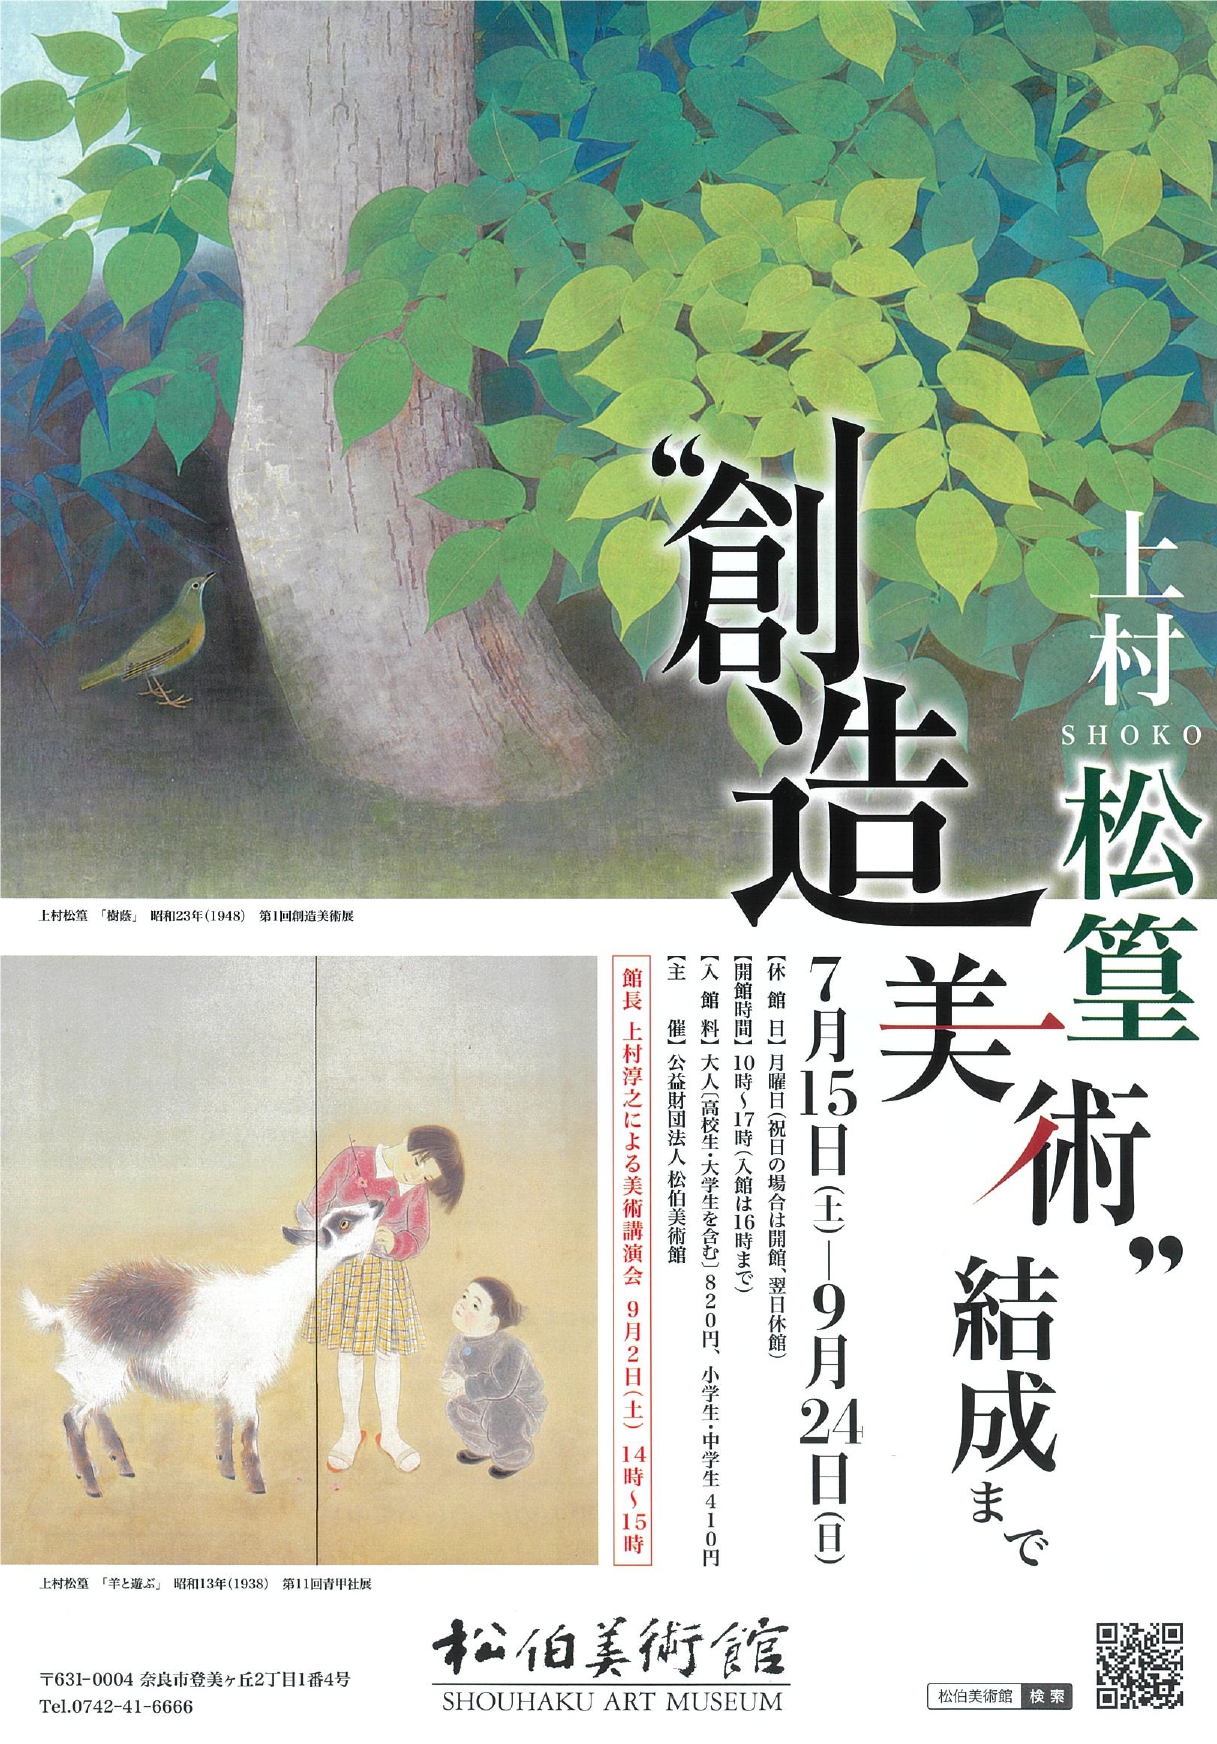 Shoko Uemuraー Formation of Sozo Bijutsu （Shouhaku Art Museum